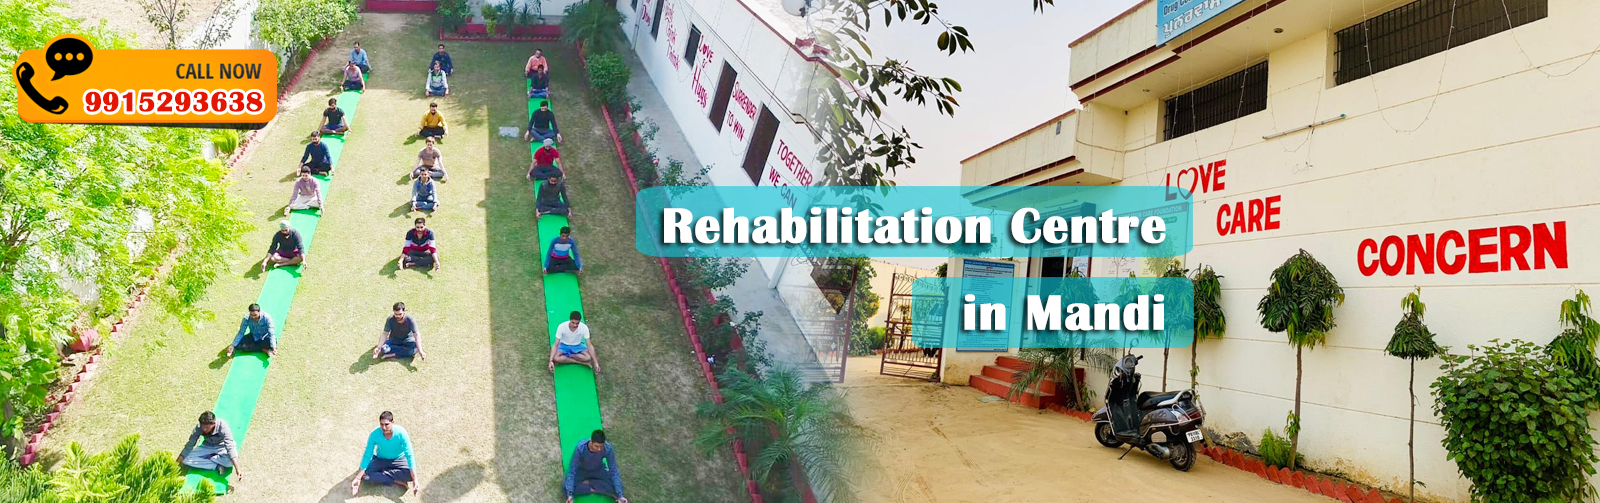 Rehabilitation Centre in Mandi